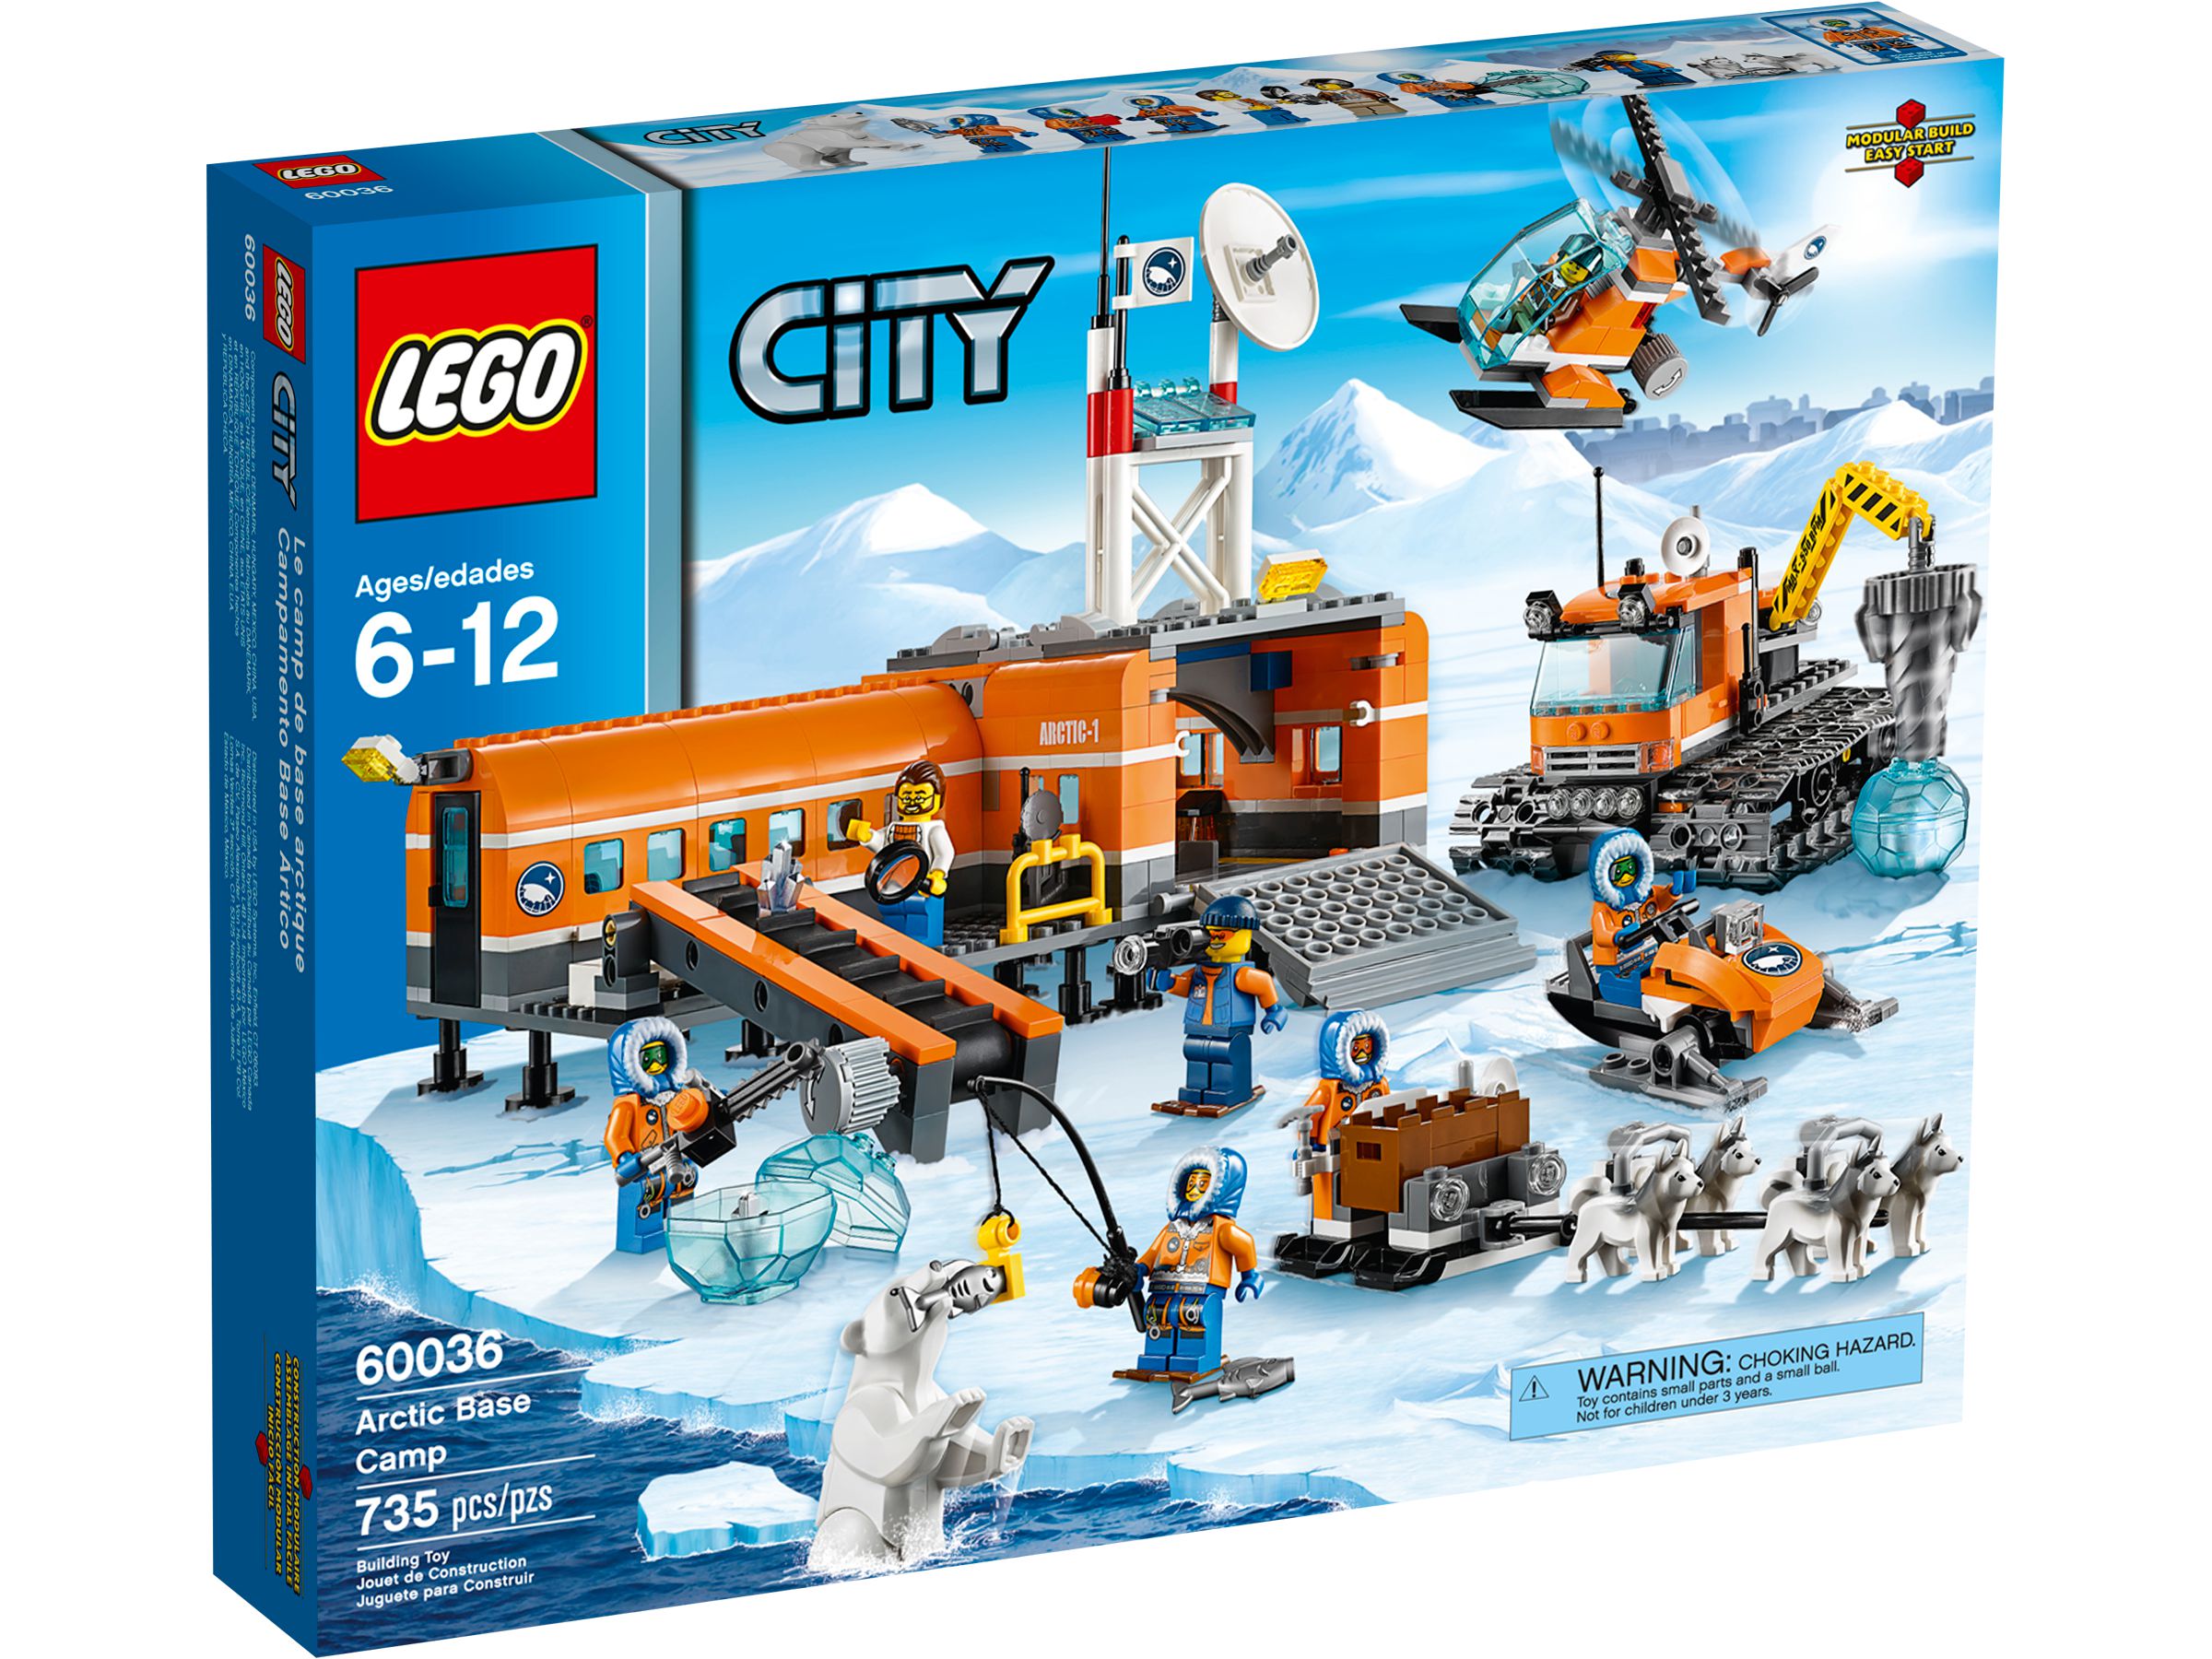 LEGO City 60036 Arktis-Basislager LEGO_60036_alt1.jpg